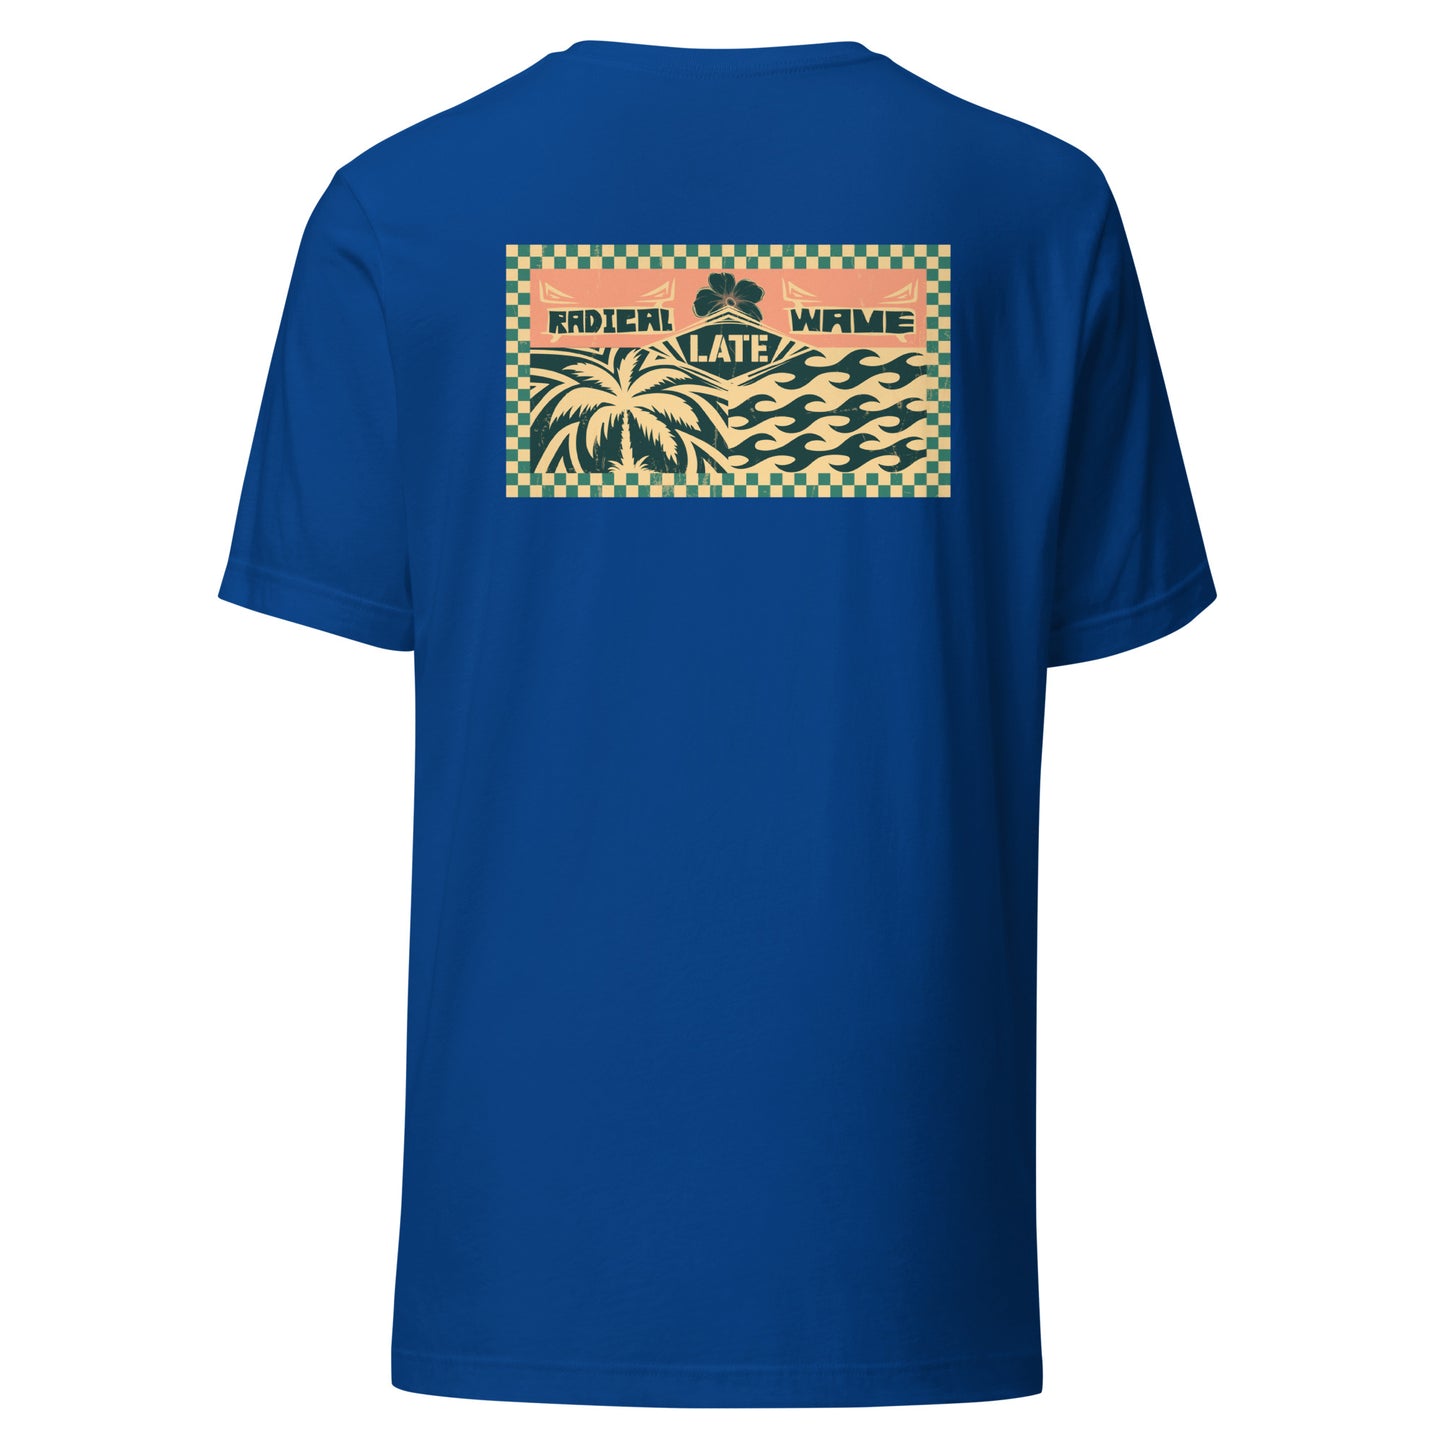 T-shirt rétro surfing radical wave, palmiers et vagues qui tubes, damier et logo Late surfshop. Tee-shirt unisexe de dos bleu